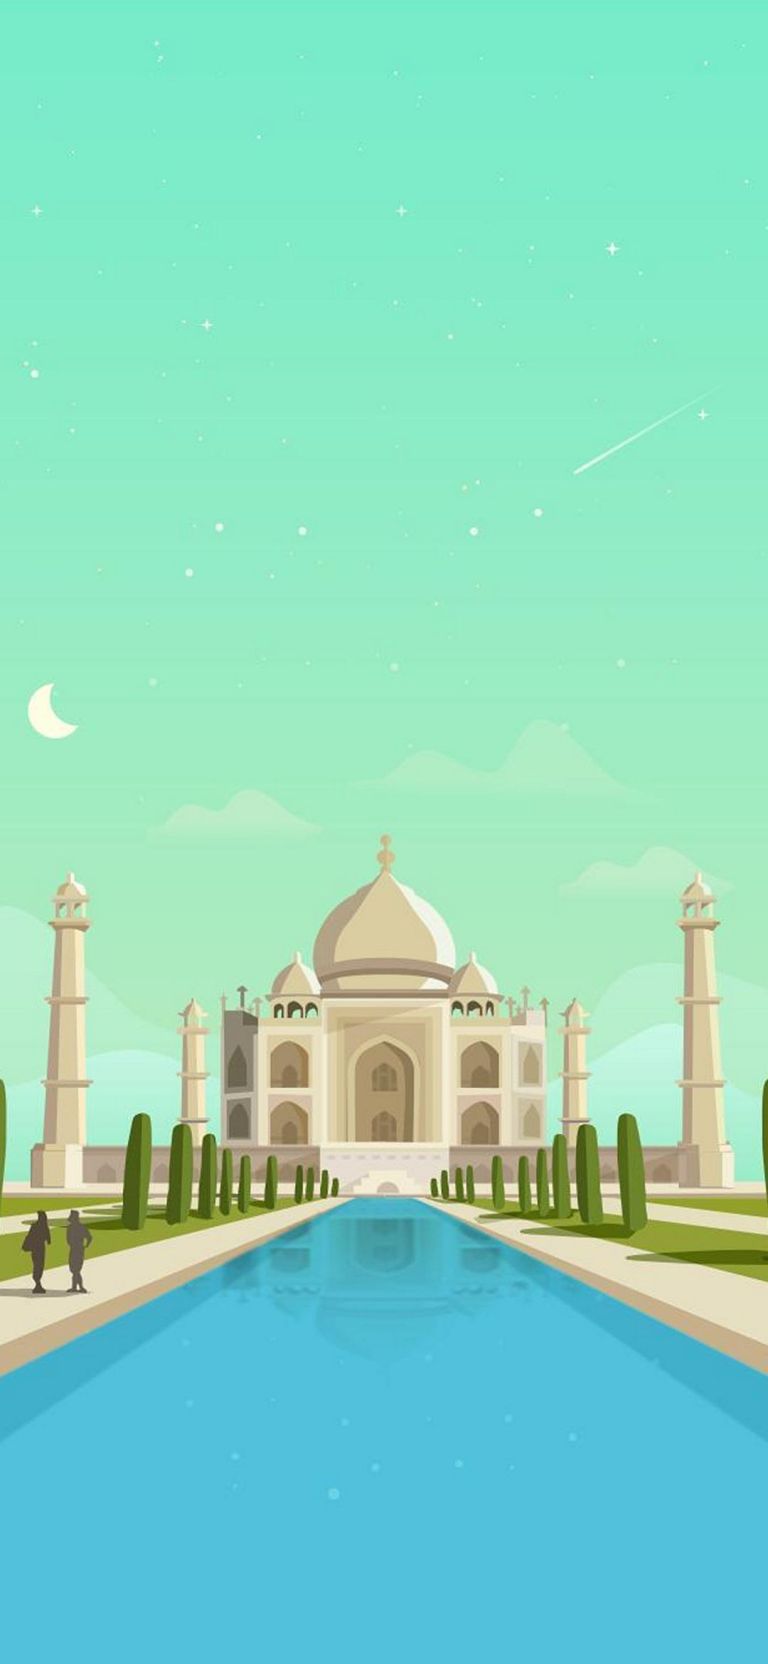 Taj Mahal India Minimal Android Mobile 4K Wallpaper